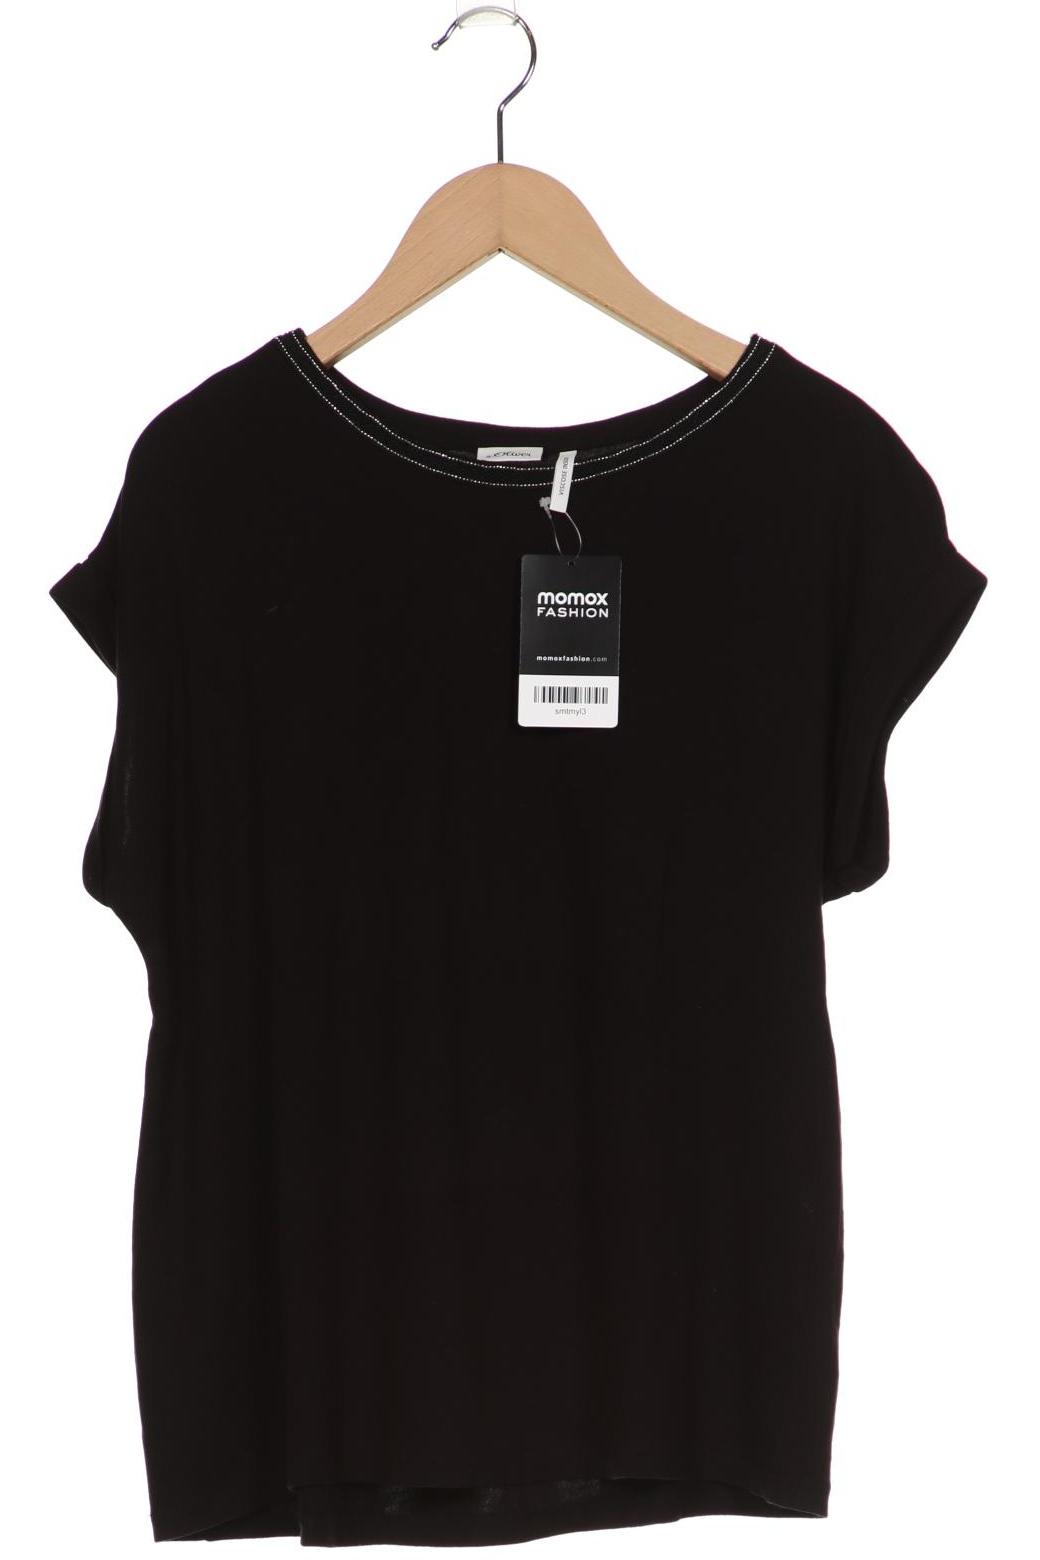 s.Oliver Selection Damen T-Shirt, schwarz, Gr. 36 von s.Oliver Selection